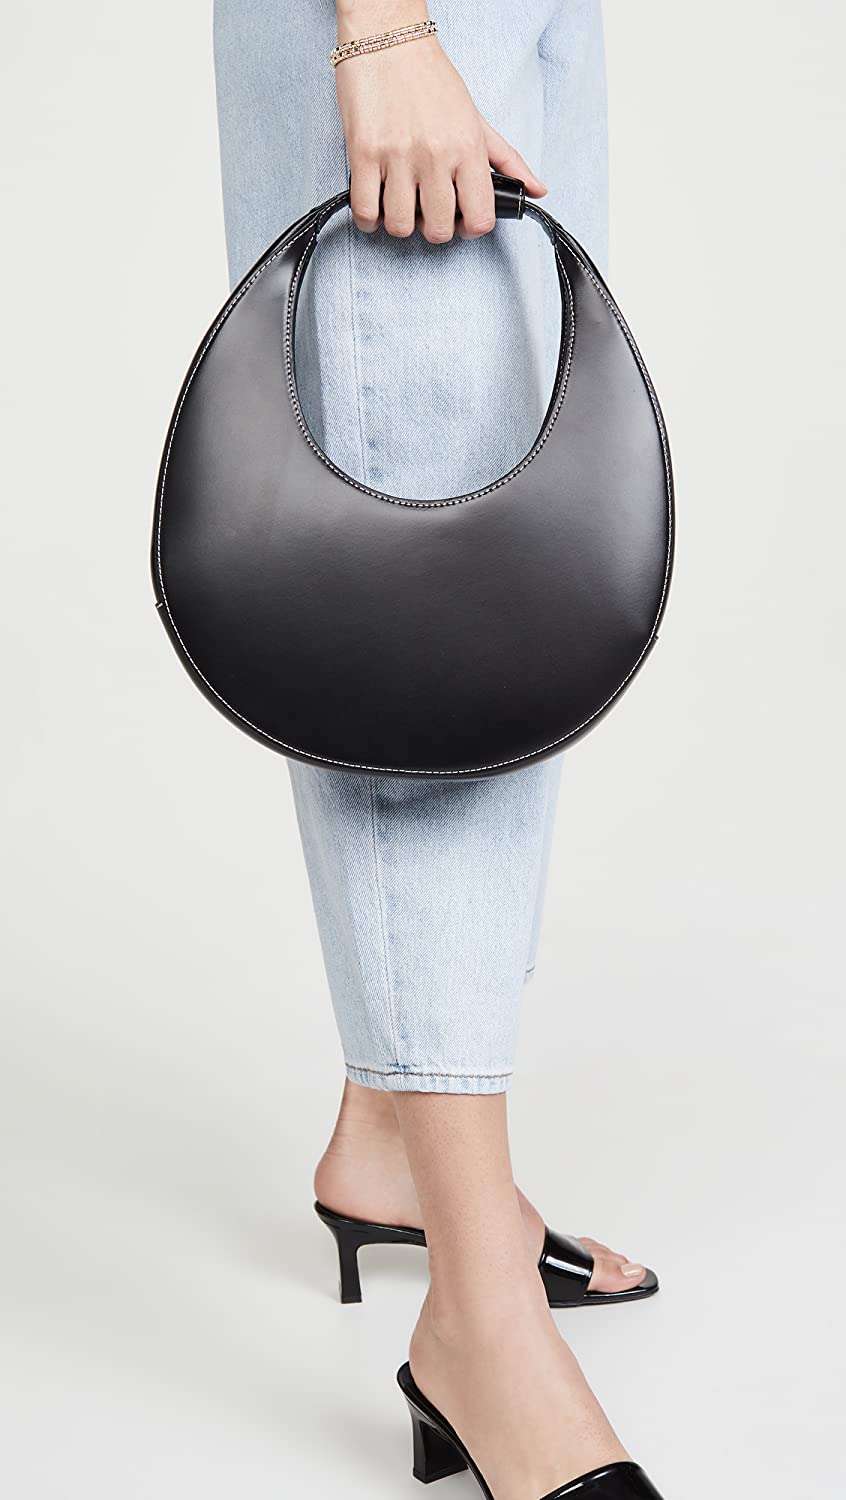 Shop Staud Women Moon Suede Leather Top Handle Tote Handbag Black Os